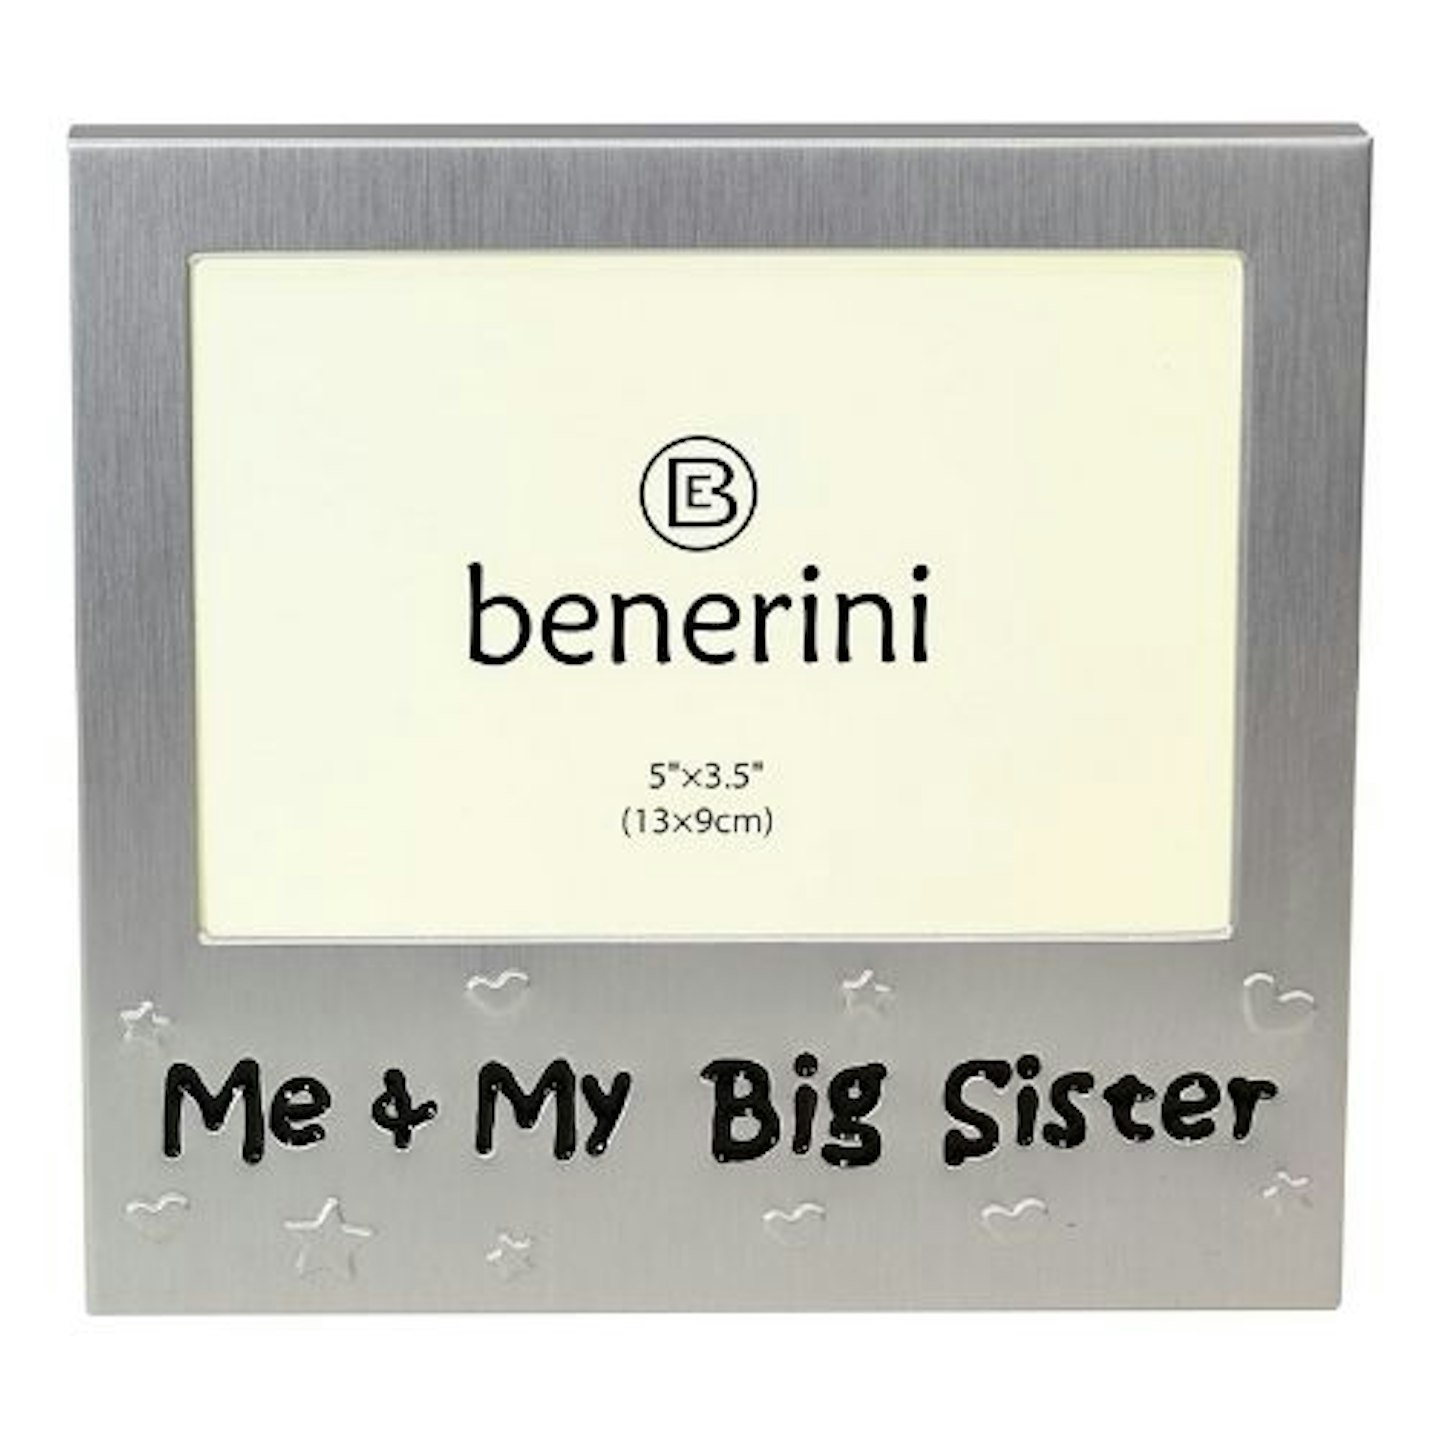 benerini Me & My Big Sister